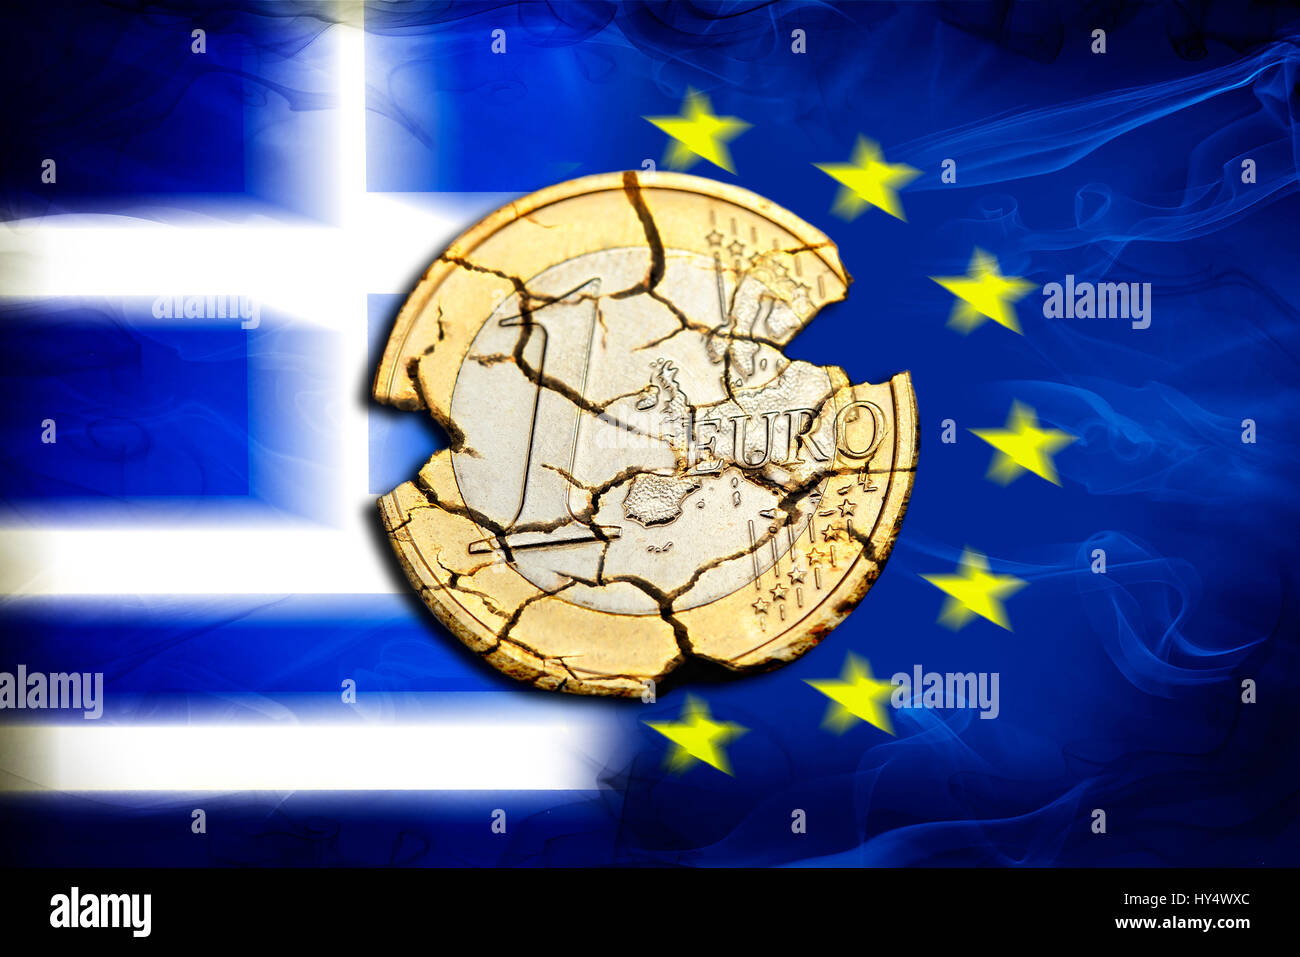 Euro-coin uno con le lacrime prima di Grecia e bandiera UE, simbolico Grexit foto, Ein-Euro-Muenze mit Rissen vor Griechenland- und UE-Fahne, Symbolfoto Grexi Foto Stock